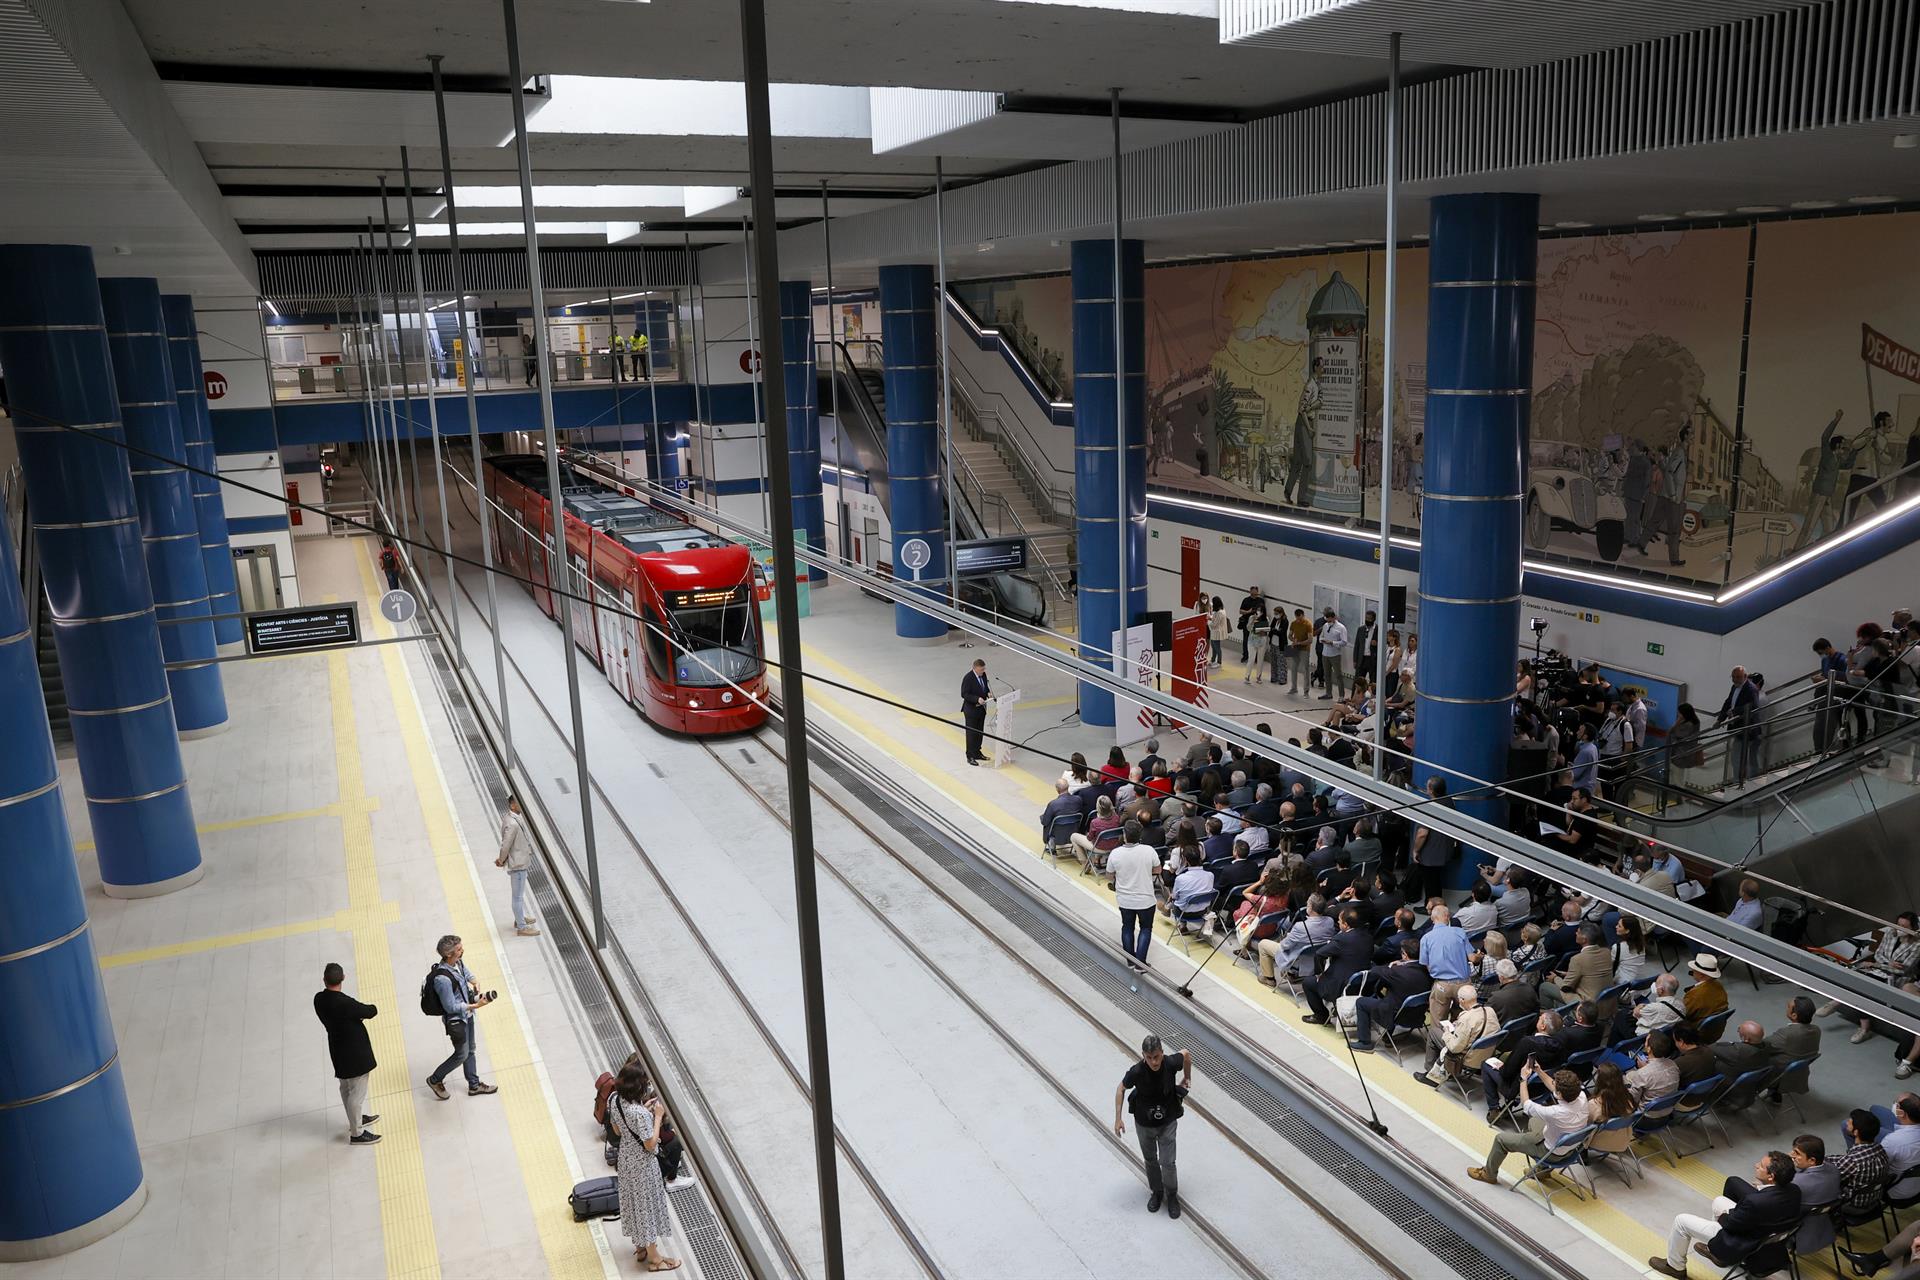 Vista general de la estación de Amado Granell de Metrovalencia. Archivo/EFE/Juan Carlos Cárdenas